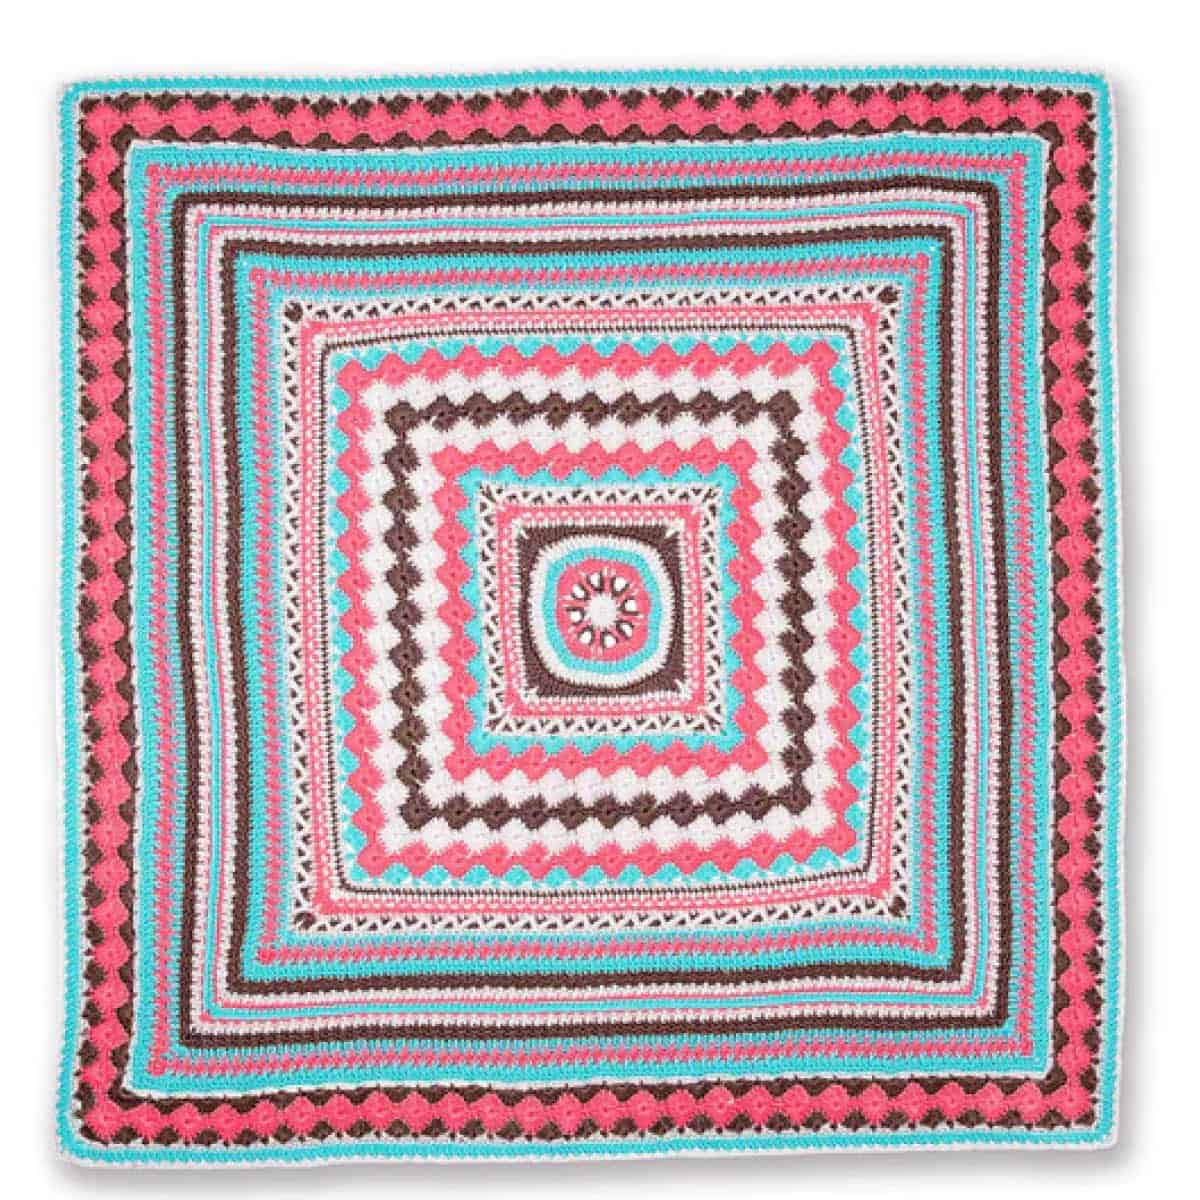 Crochet Better Together Afghan Pattern